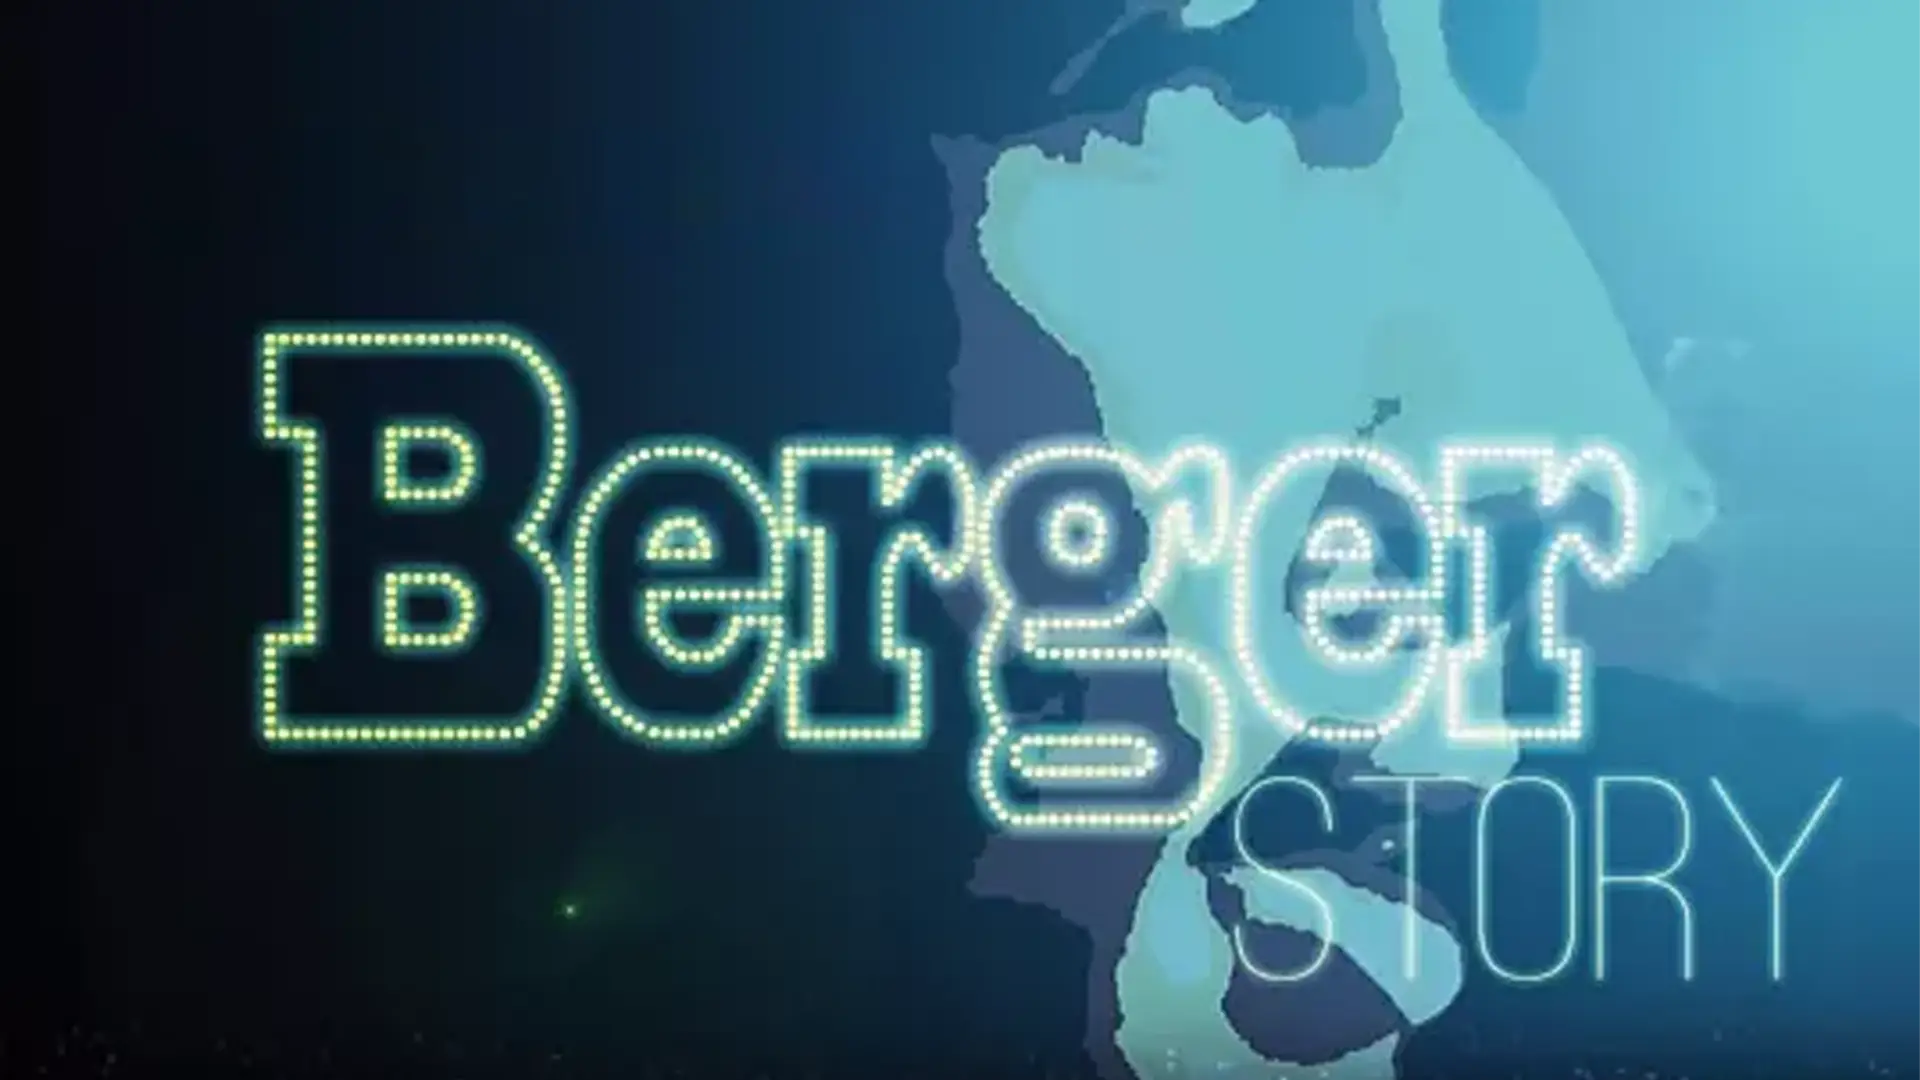 Claude gerard production présente Berger Story